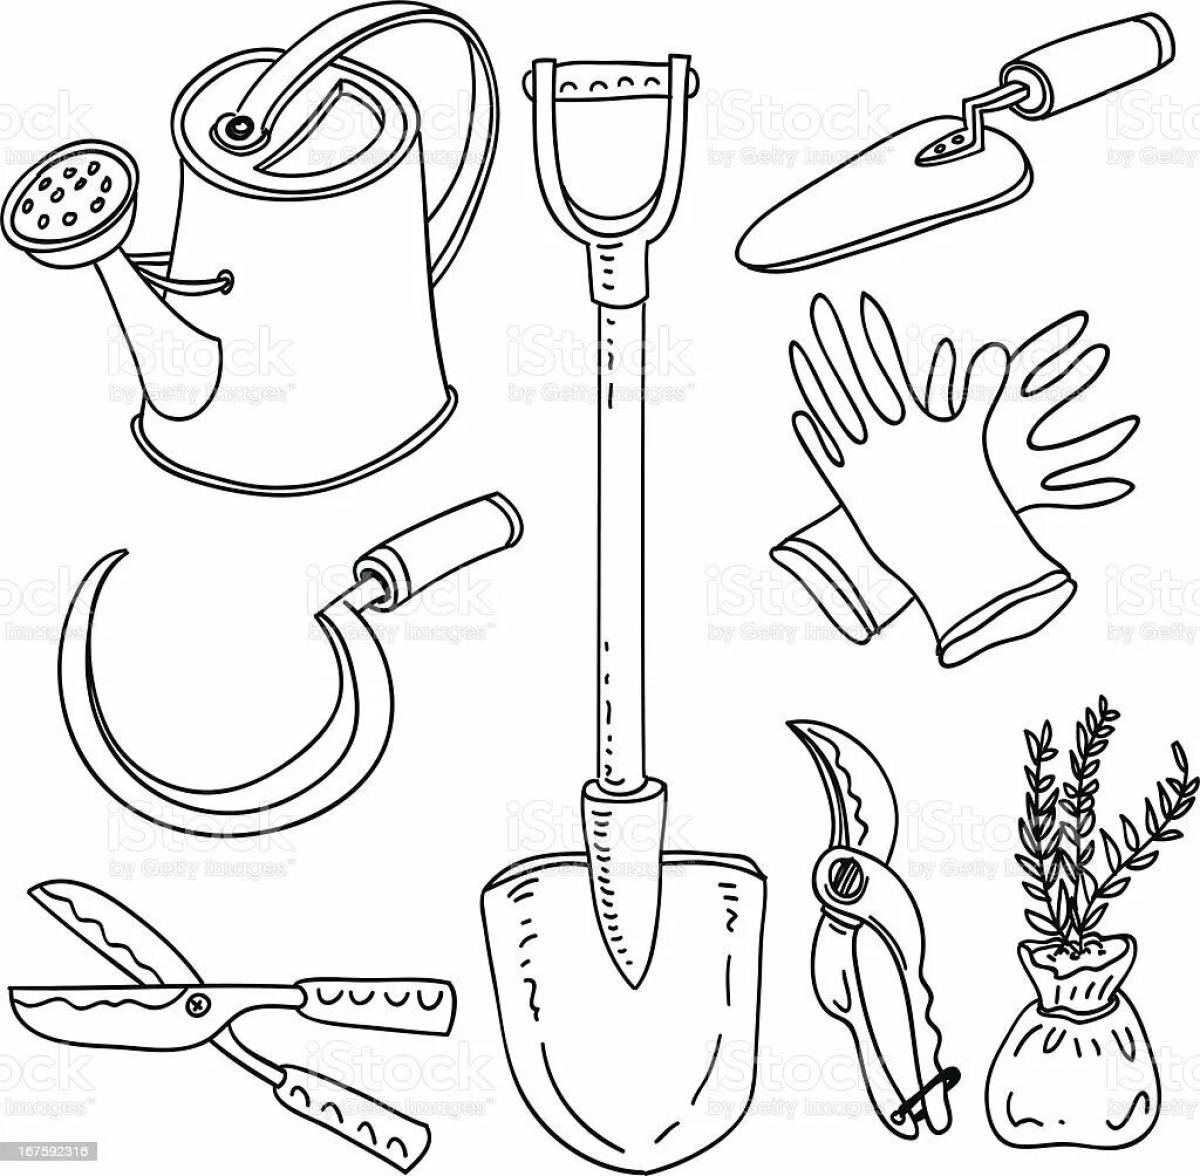 Tools tools #3